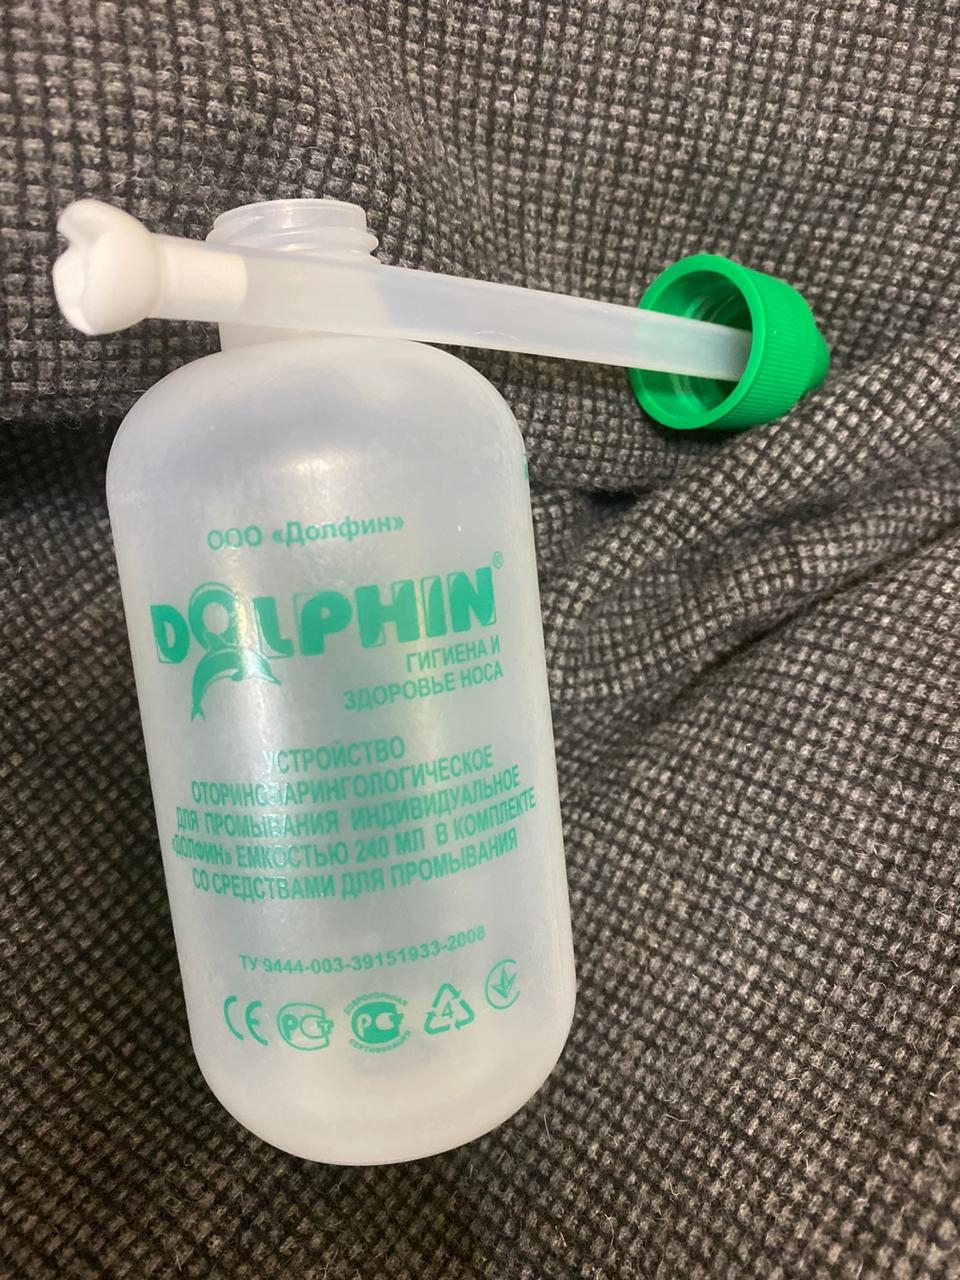 Долфин при аллергии Средство для промывания носа - Во время аллергии помогает уменьшить отек и забыть о нём